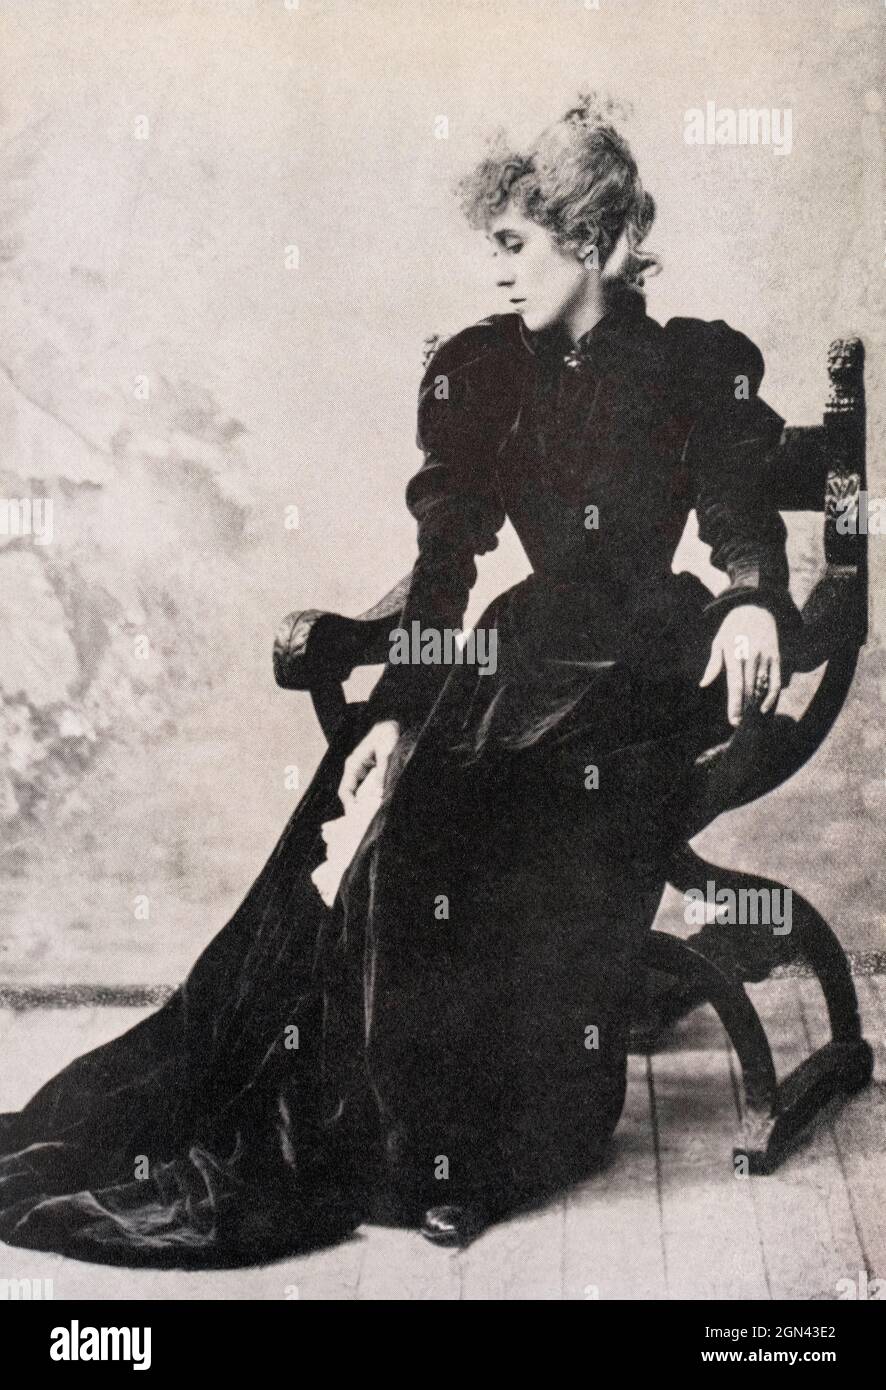 Portrait de Jane avril, danseuse de French CAN-CAN, 1868-1943. Henri Toulouse-Lautrec, 1864 - 1901, artiste postimpressionniste français présente le danseur vedette de la discothèque sur plusieurs de ses affiches et peintures. Banque D'Images